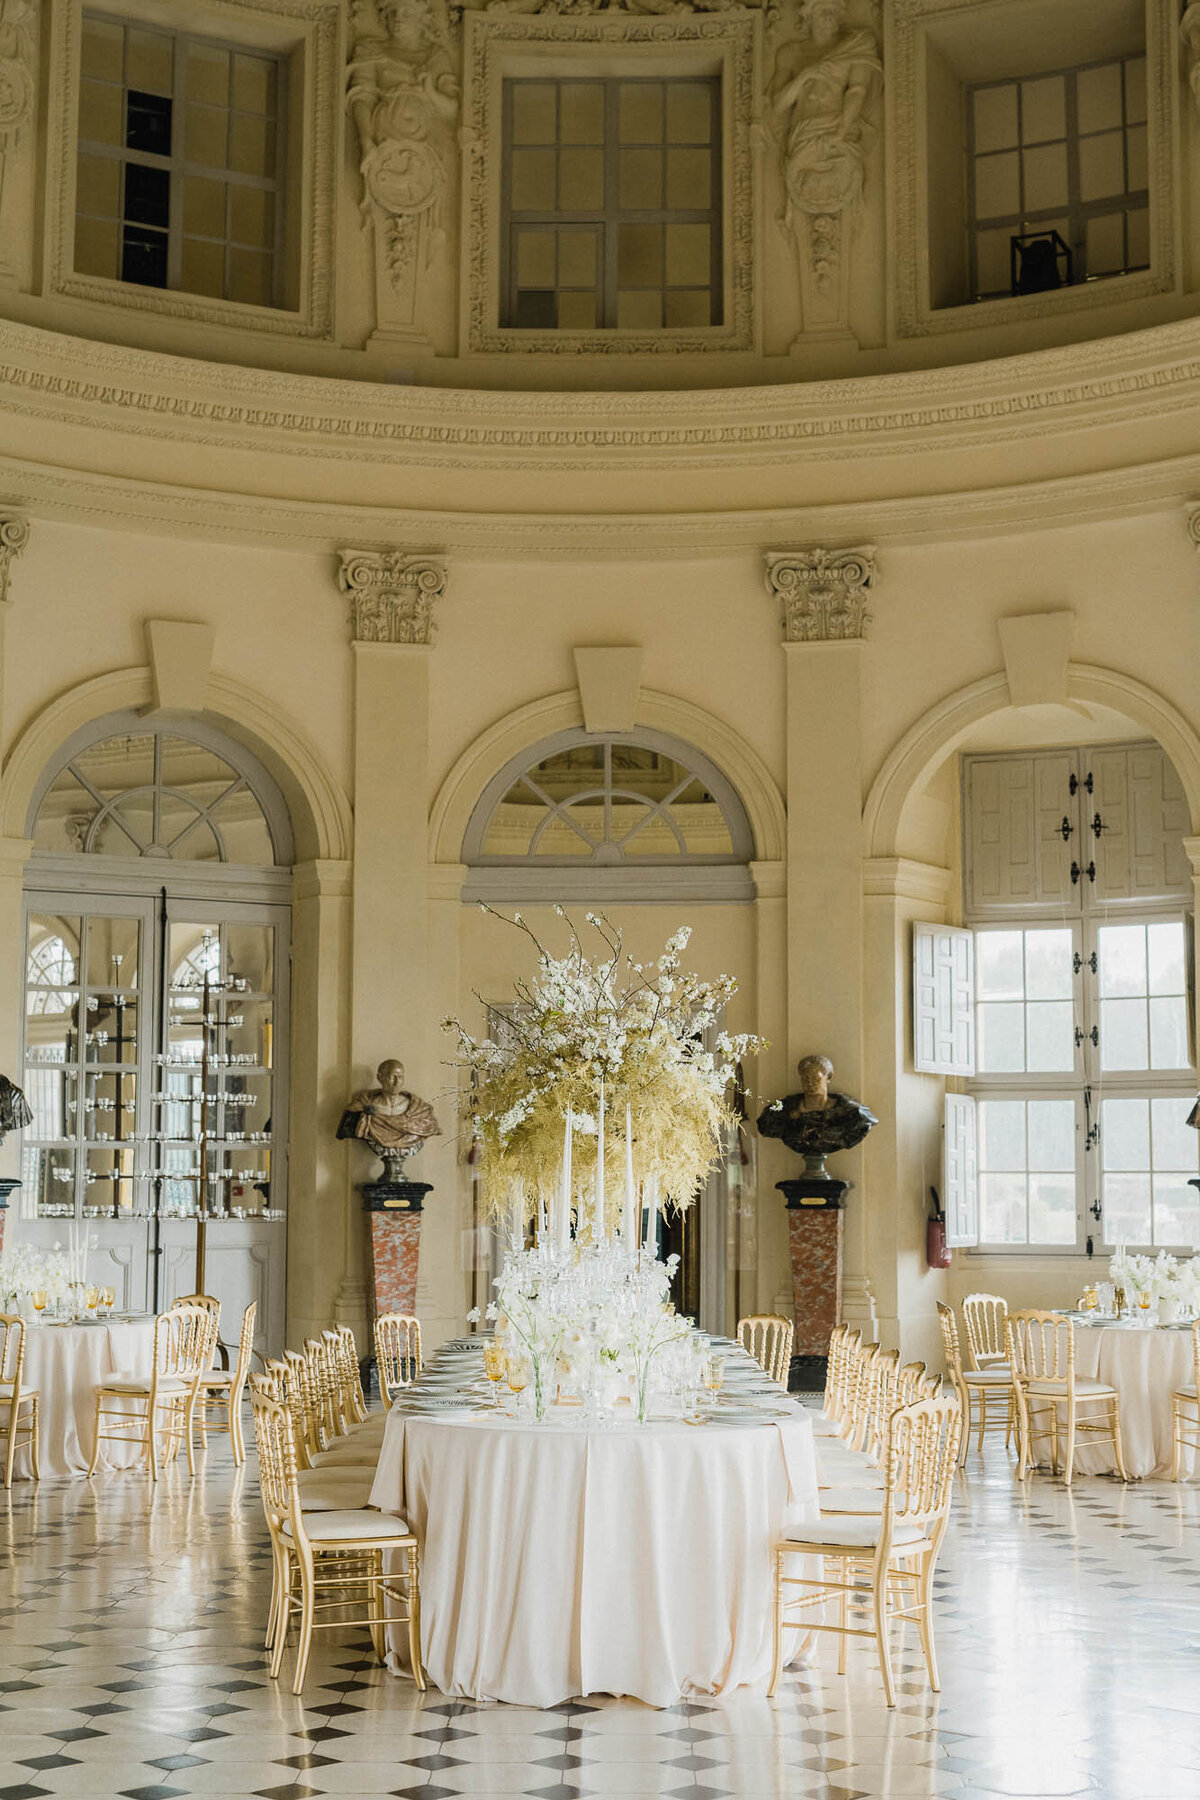 CapucineAtelierFloral_FloralDesigner_Vaux-le-Vicomte_Wedding_Tablescape